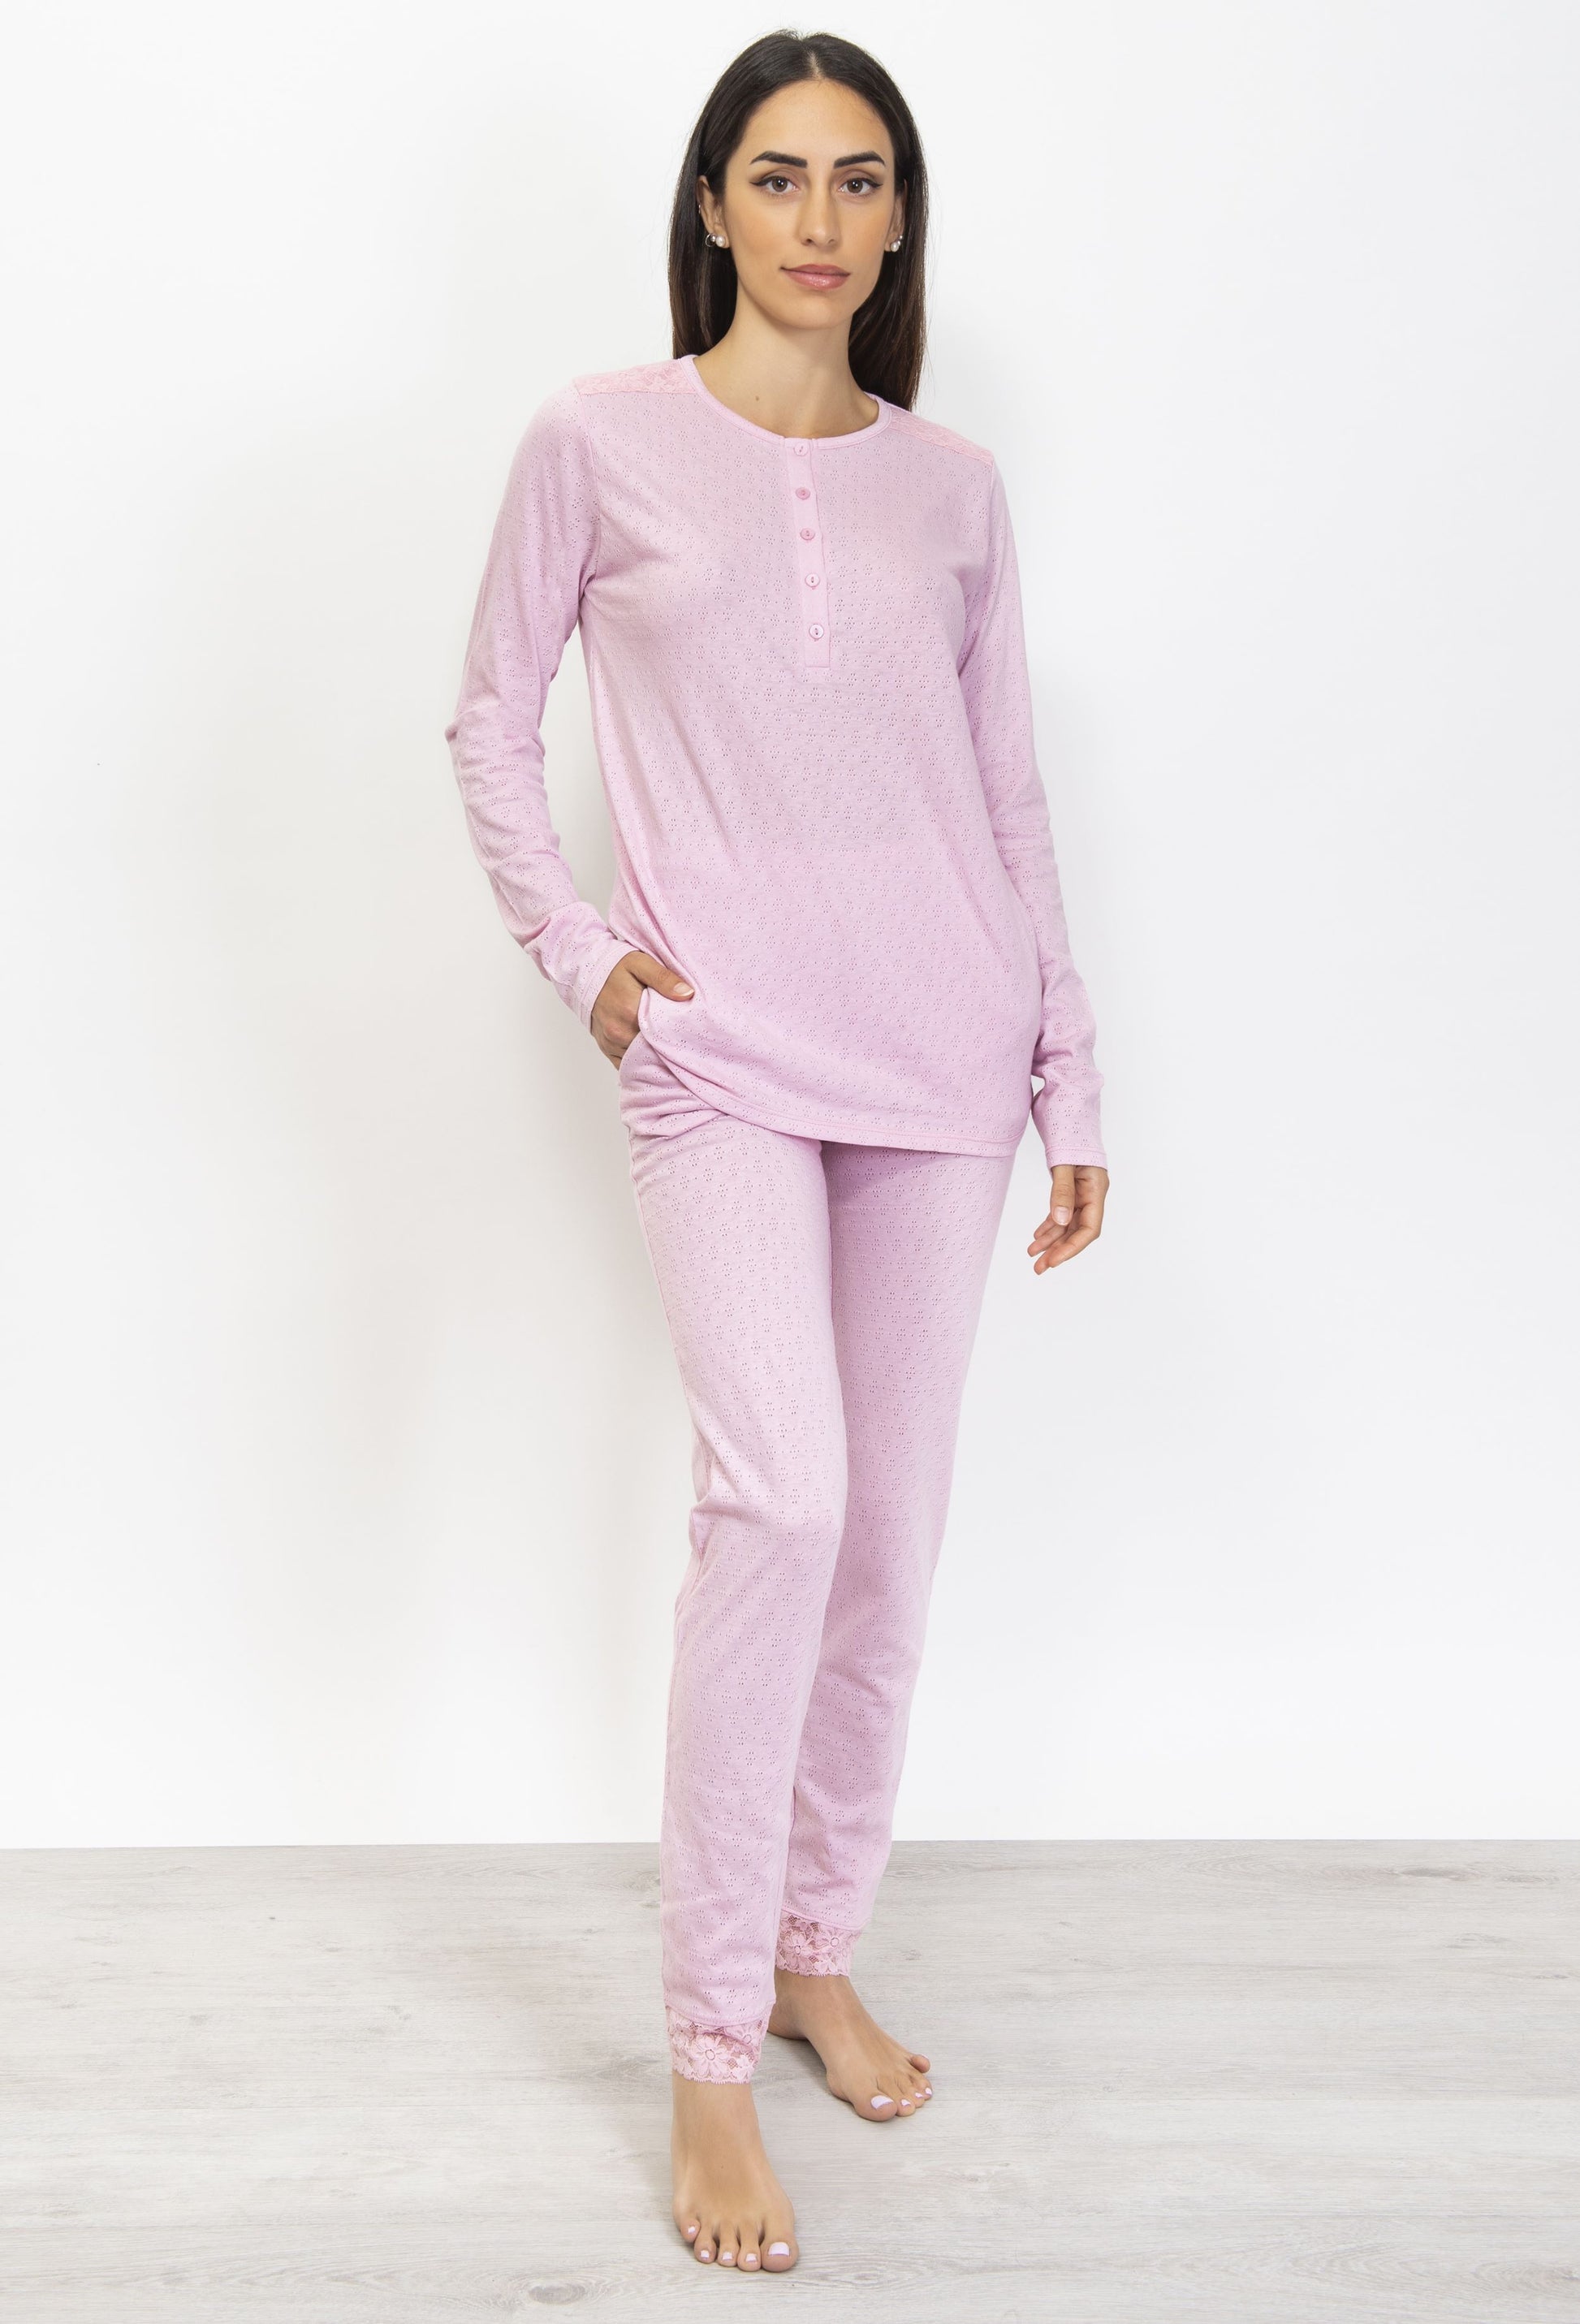 Women's Pajamas, Cotton Long Sleeve Pajama Set